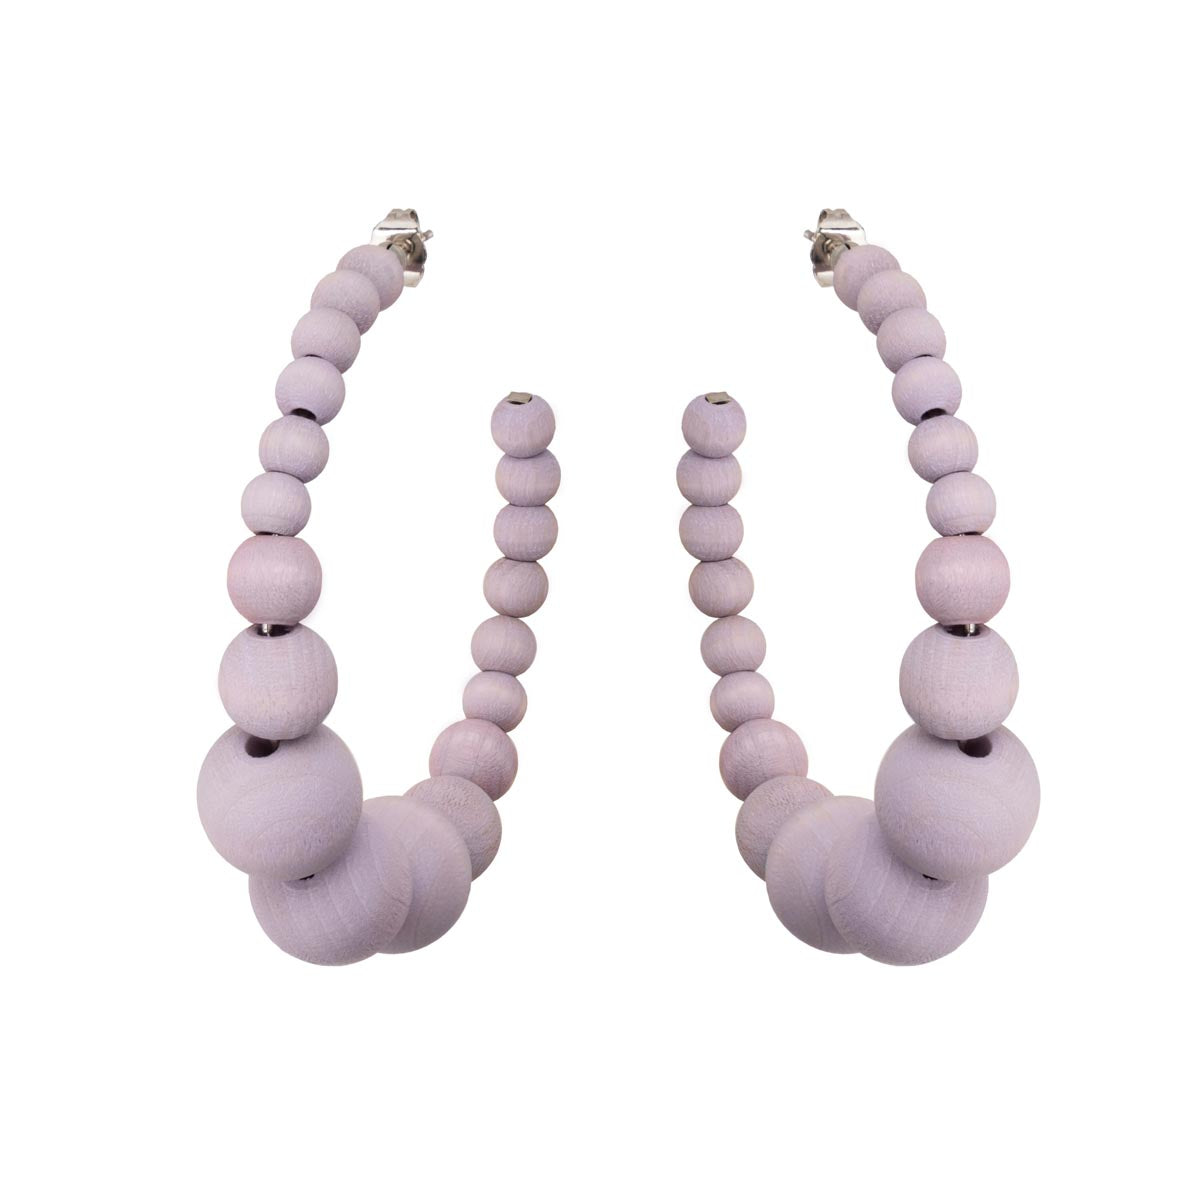 Angervo earrings, lavender